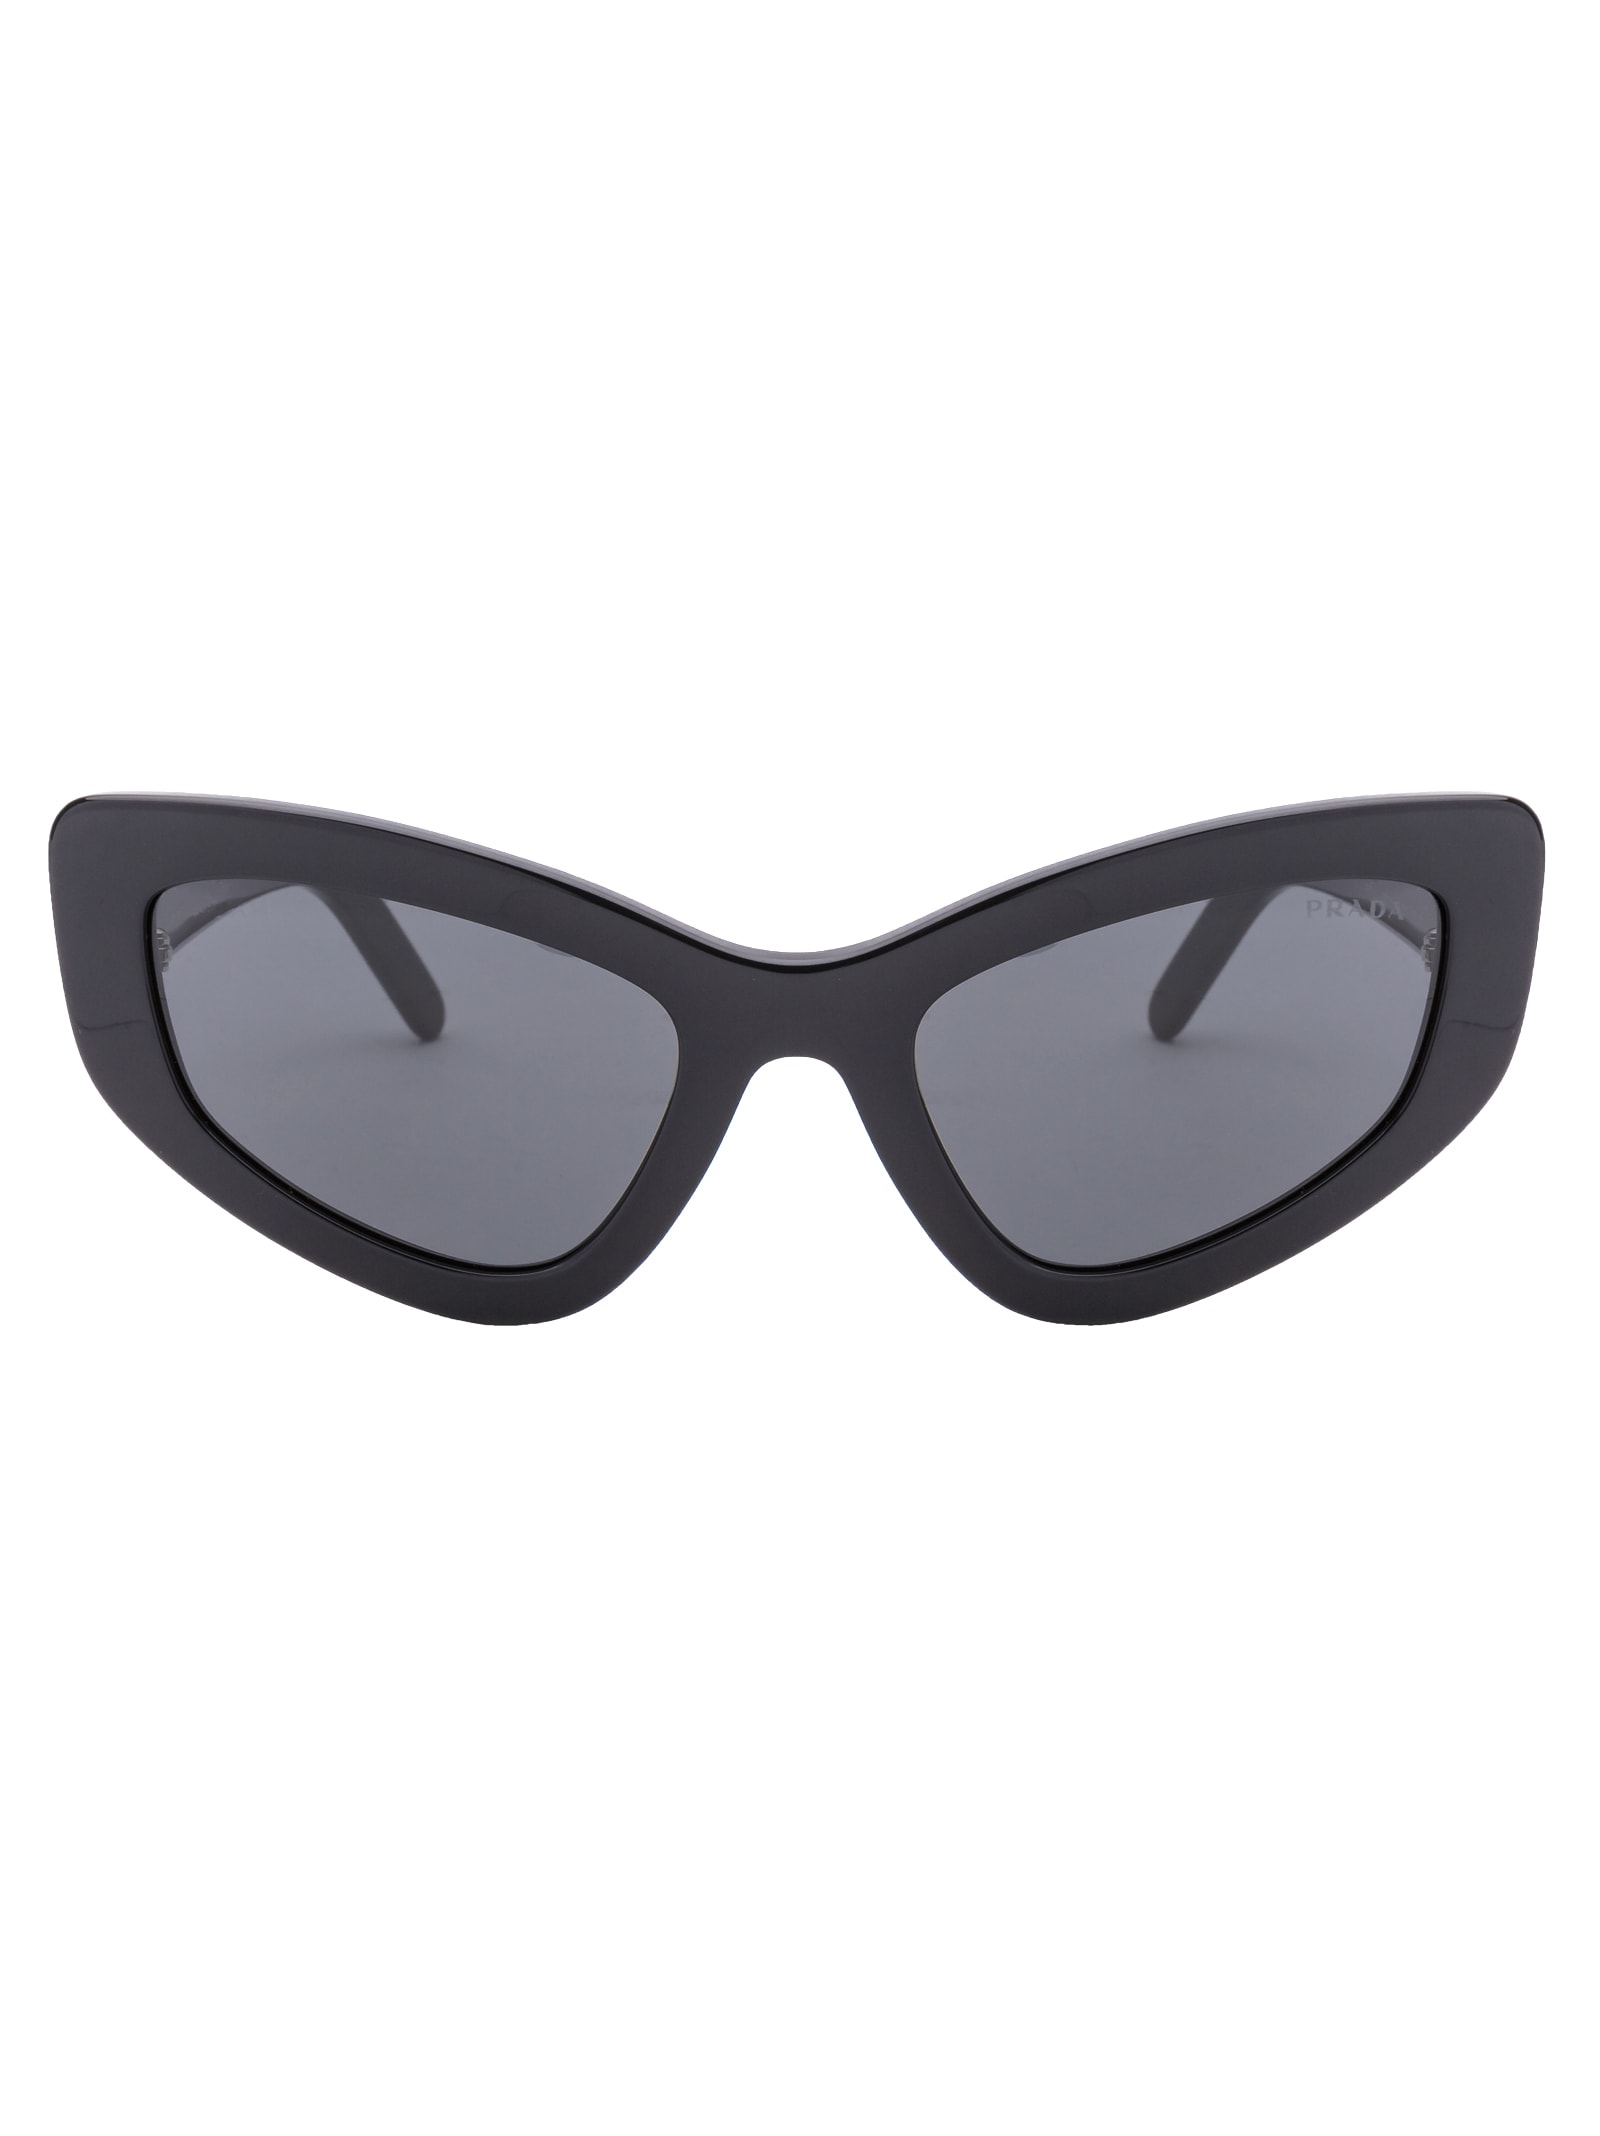 Prada 0pr 11vs Sunglasses In 1ab5s0 Black